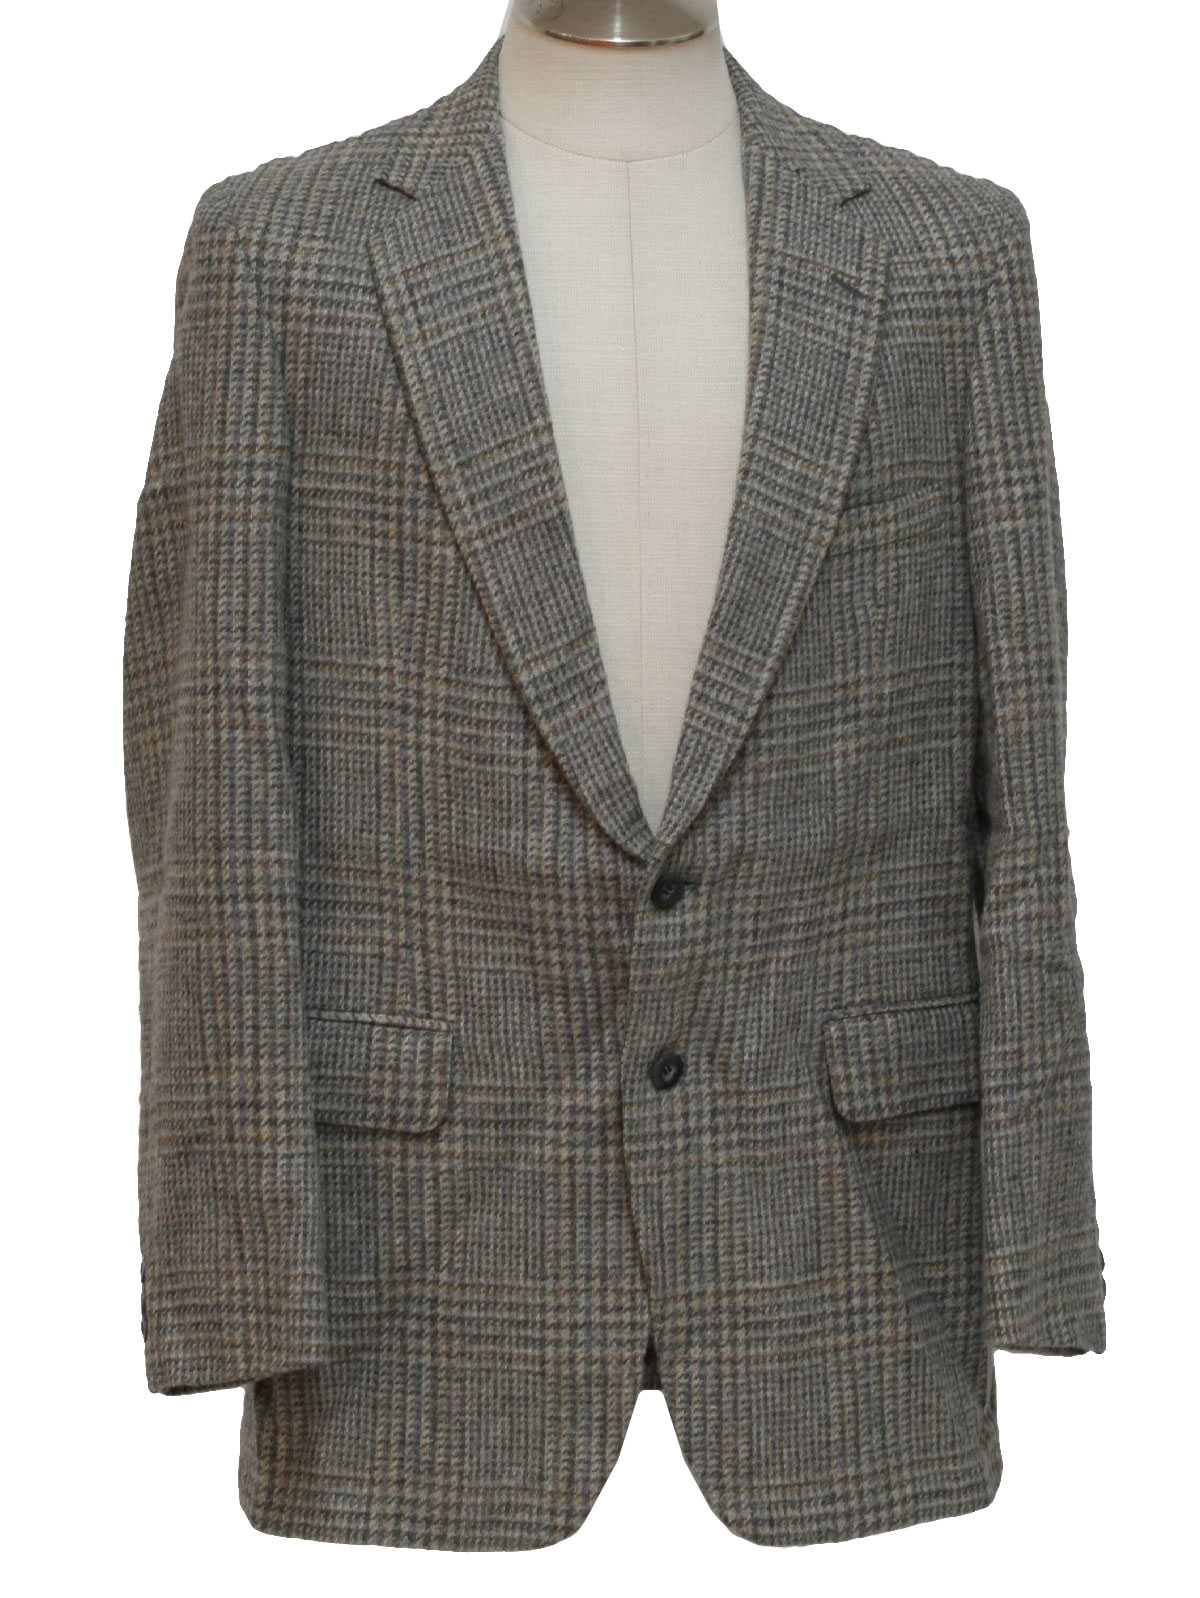 1980's Retro Jacket: 80s -La Mar Clothes- Mens gray, tan, beige, brown ...